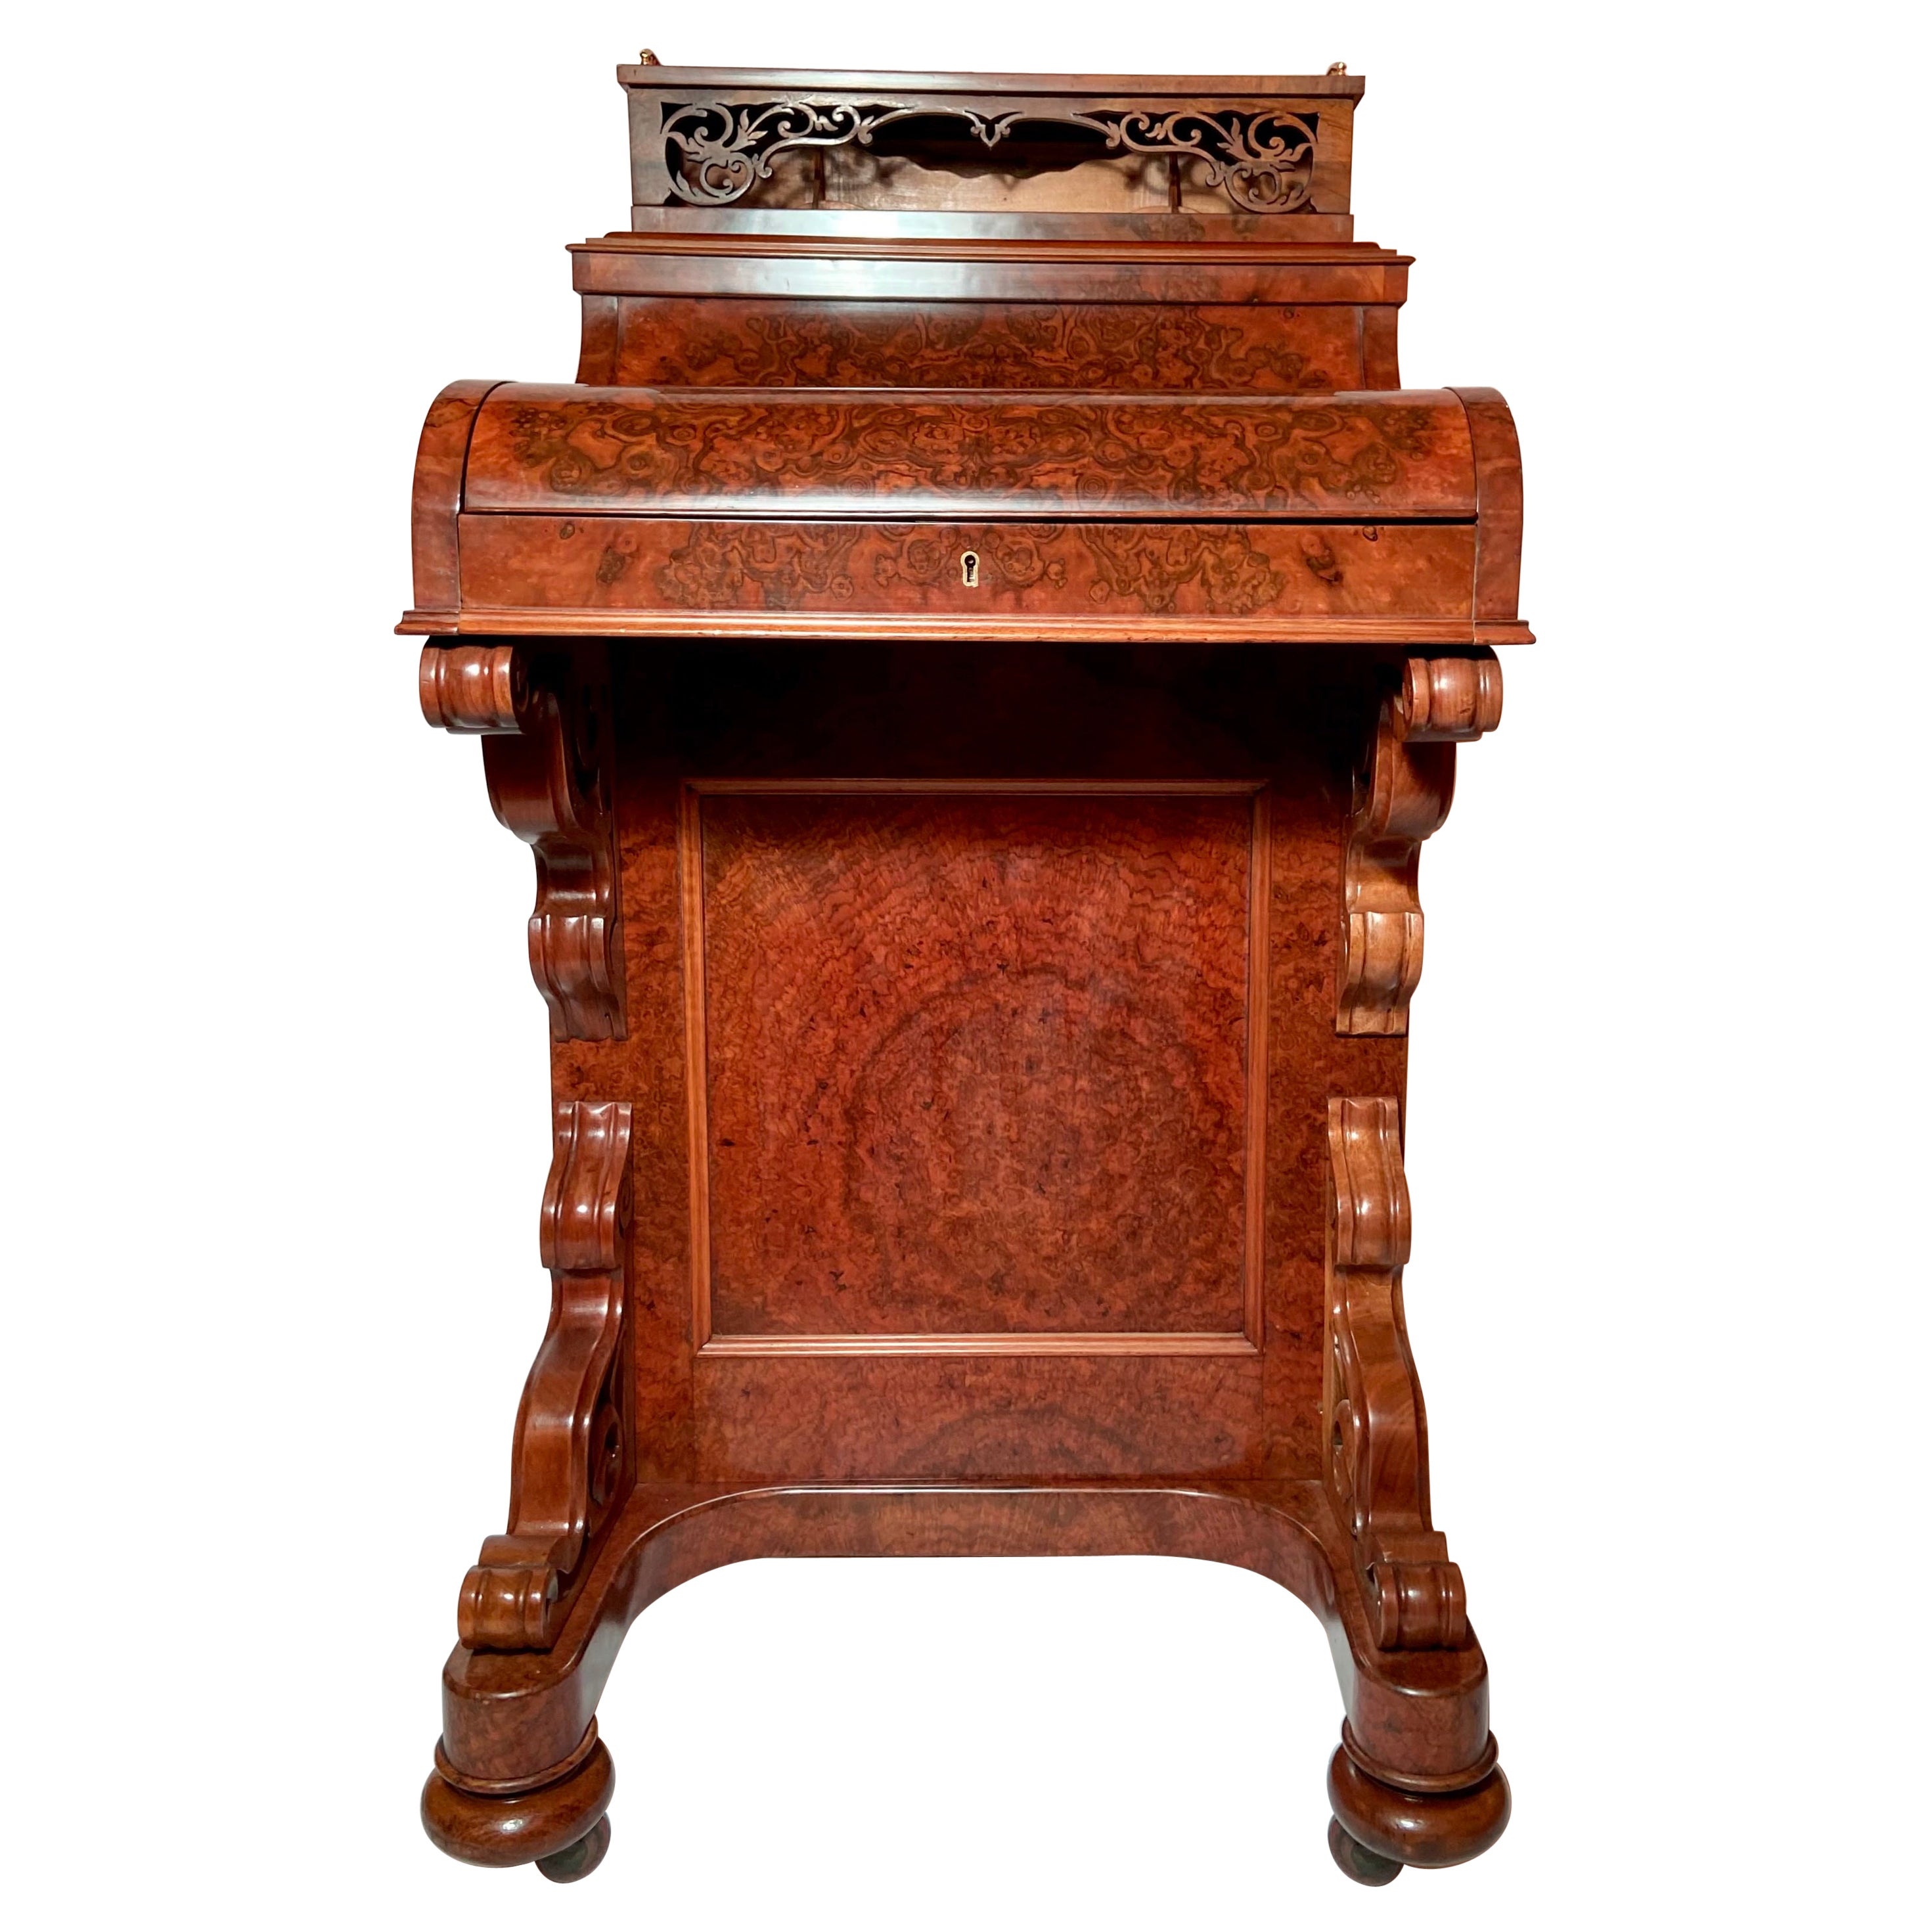 Antique Burled Walnut "Mechanical" Davenport Desk, Circa 1885.